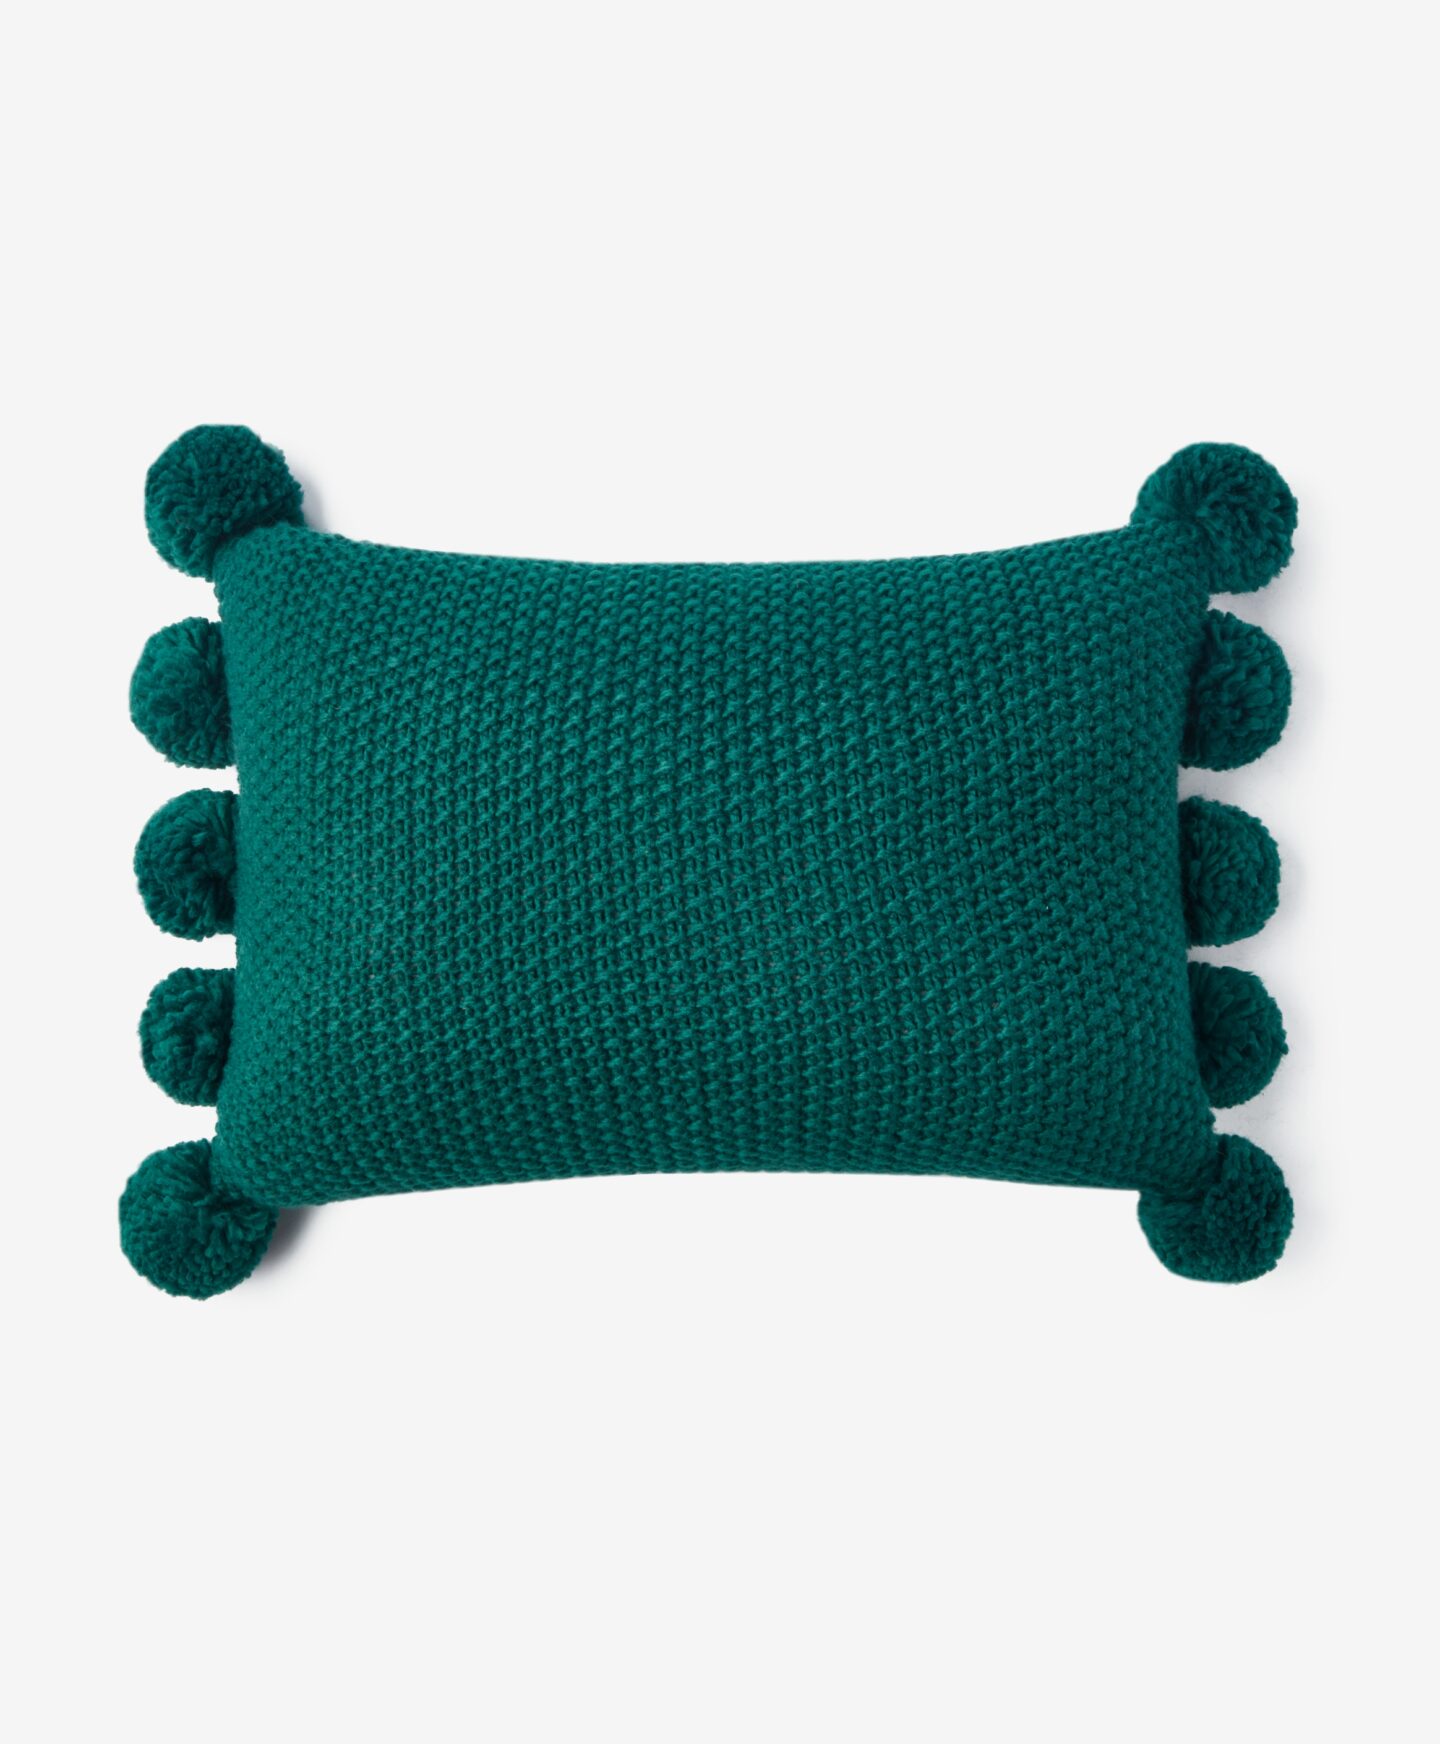 Διακοσμητικό μαξιλάρι με φούντες , χρώμα πράσινο, 35 cm x 50 cm